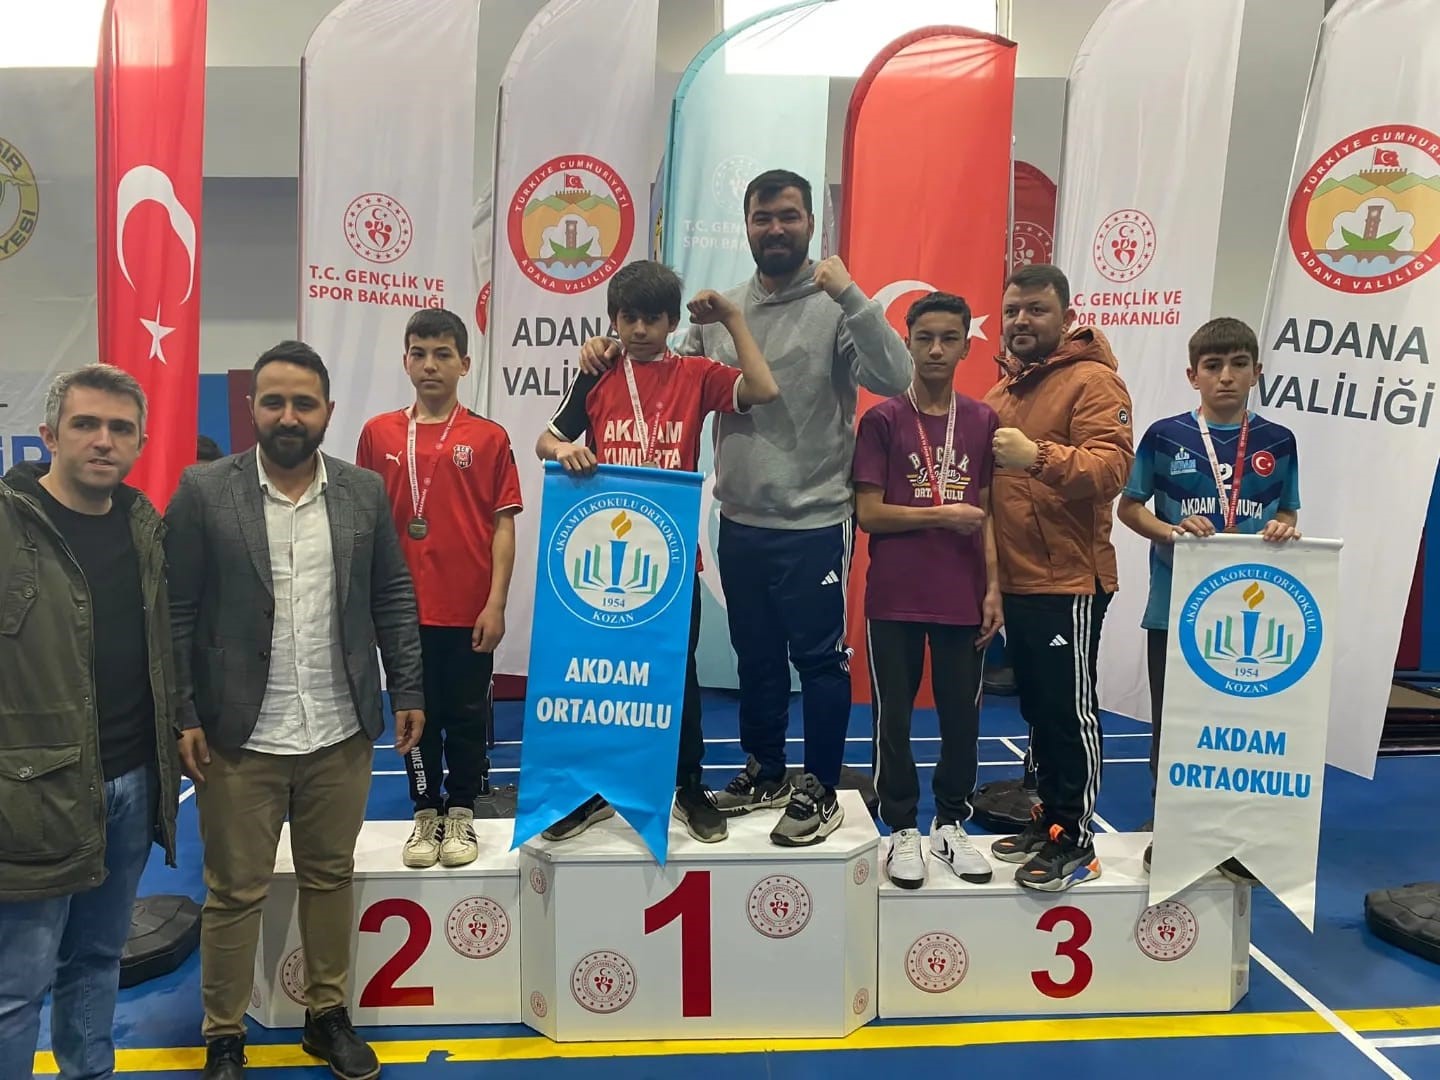 Akdam Ortaokulu, Adana’yı bilek güreşi şampiyonasında temsil edecek!